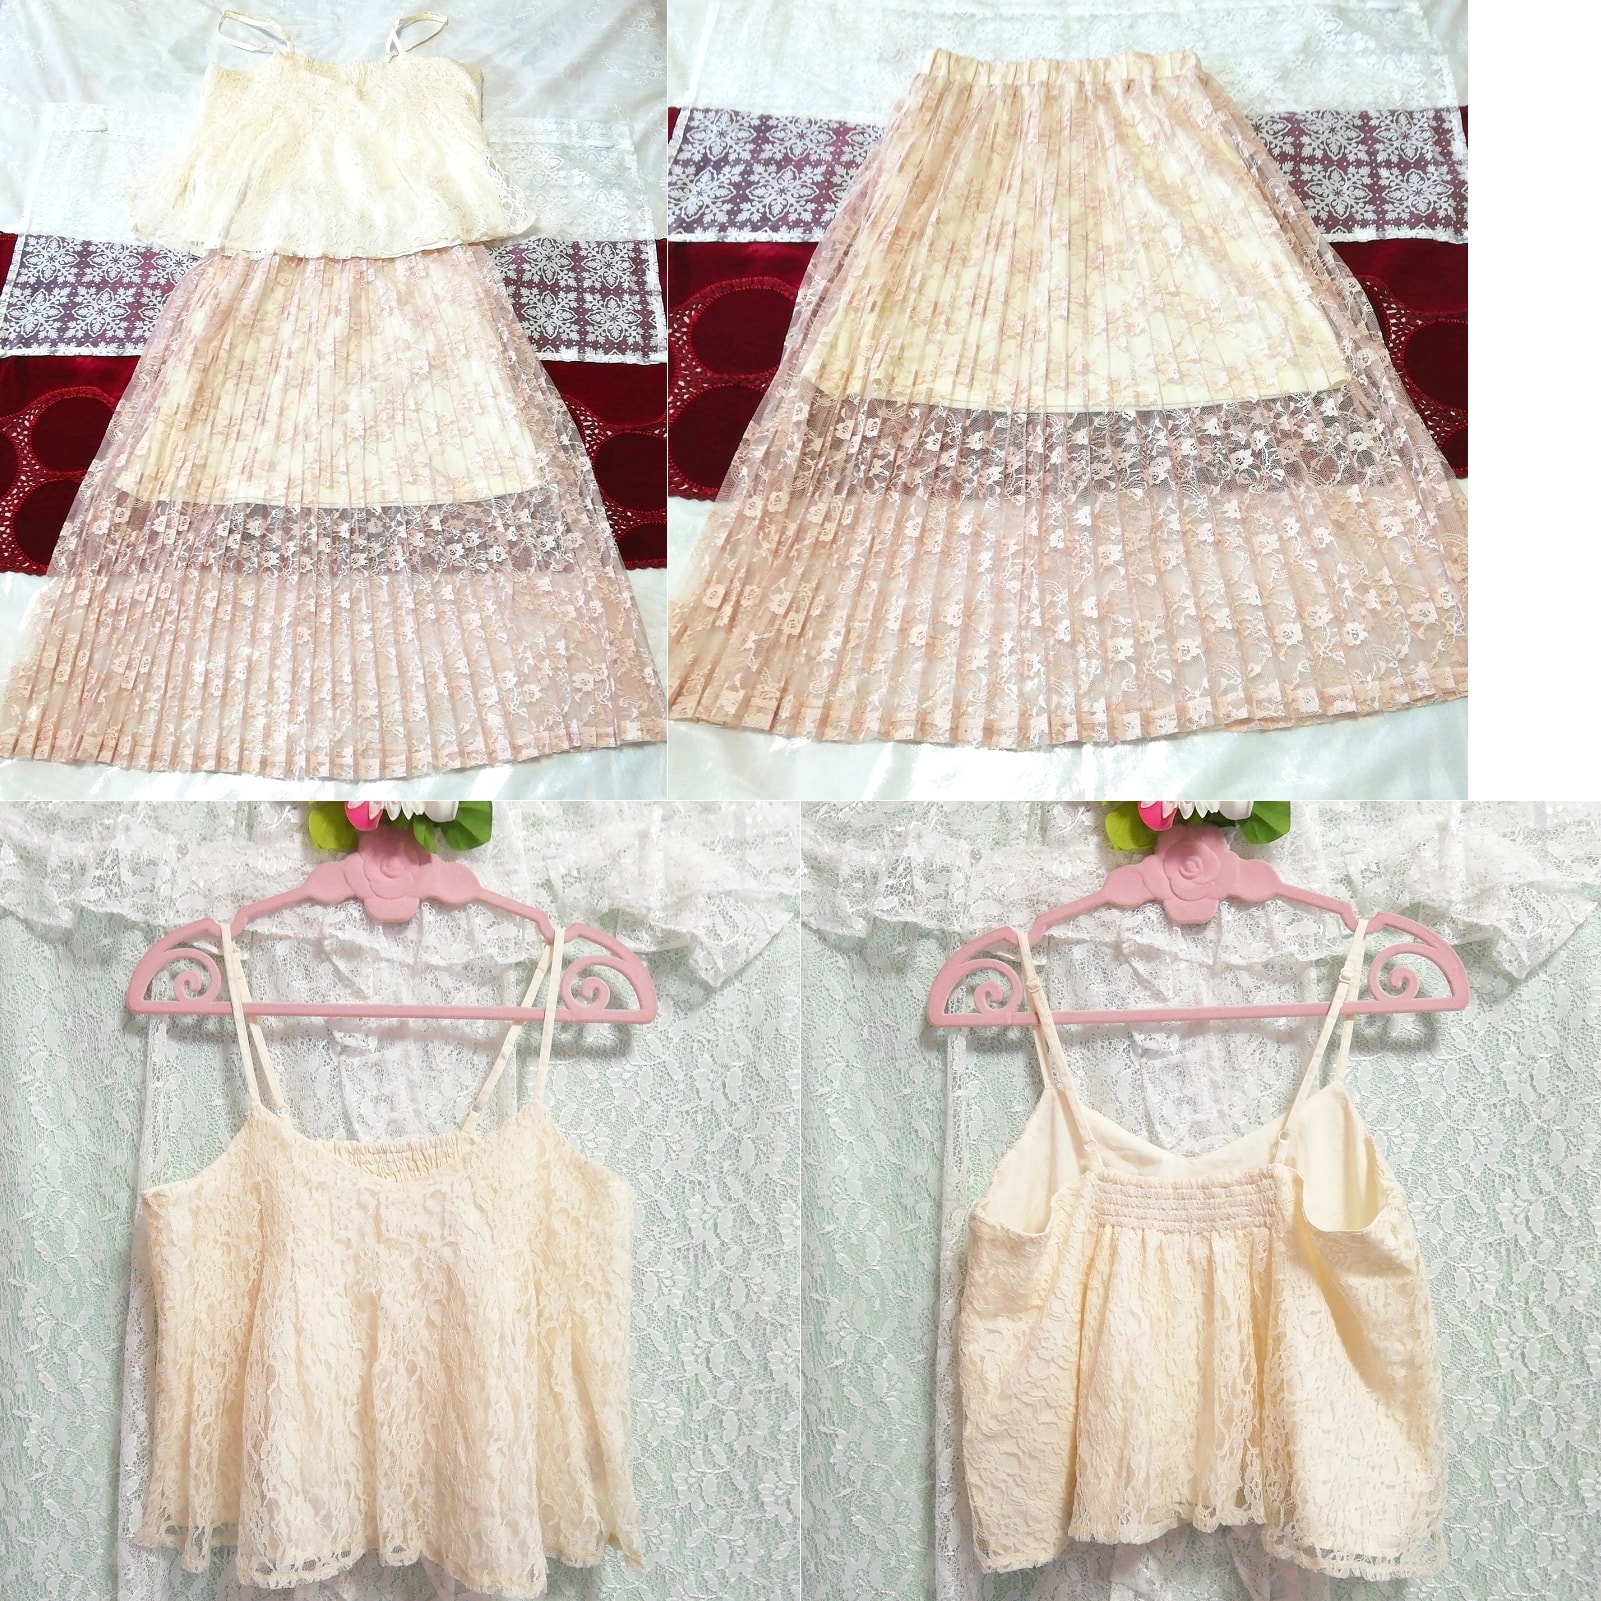 꽃무늬 화이트 레이스 캐미솔 네글리제 나이트가운 시스루 레이스 스커트 드레스 2P, 패션, 숙녀 패션, 잠옷, 잠옷